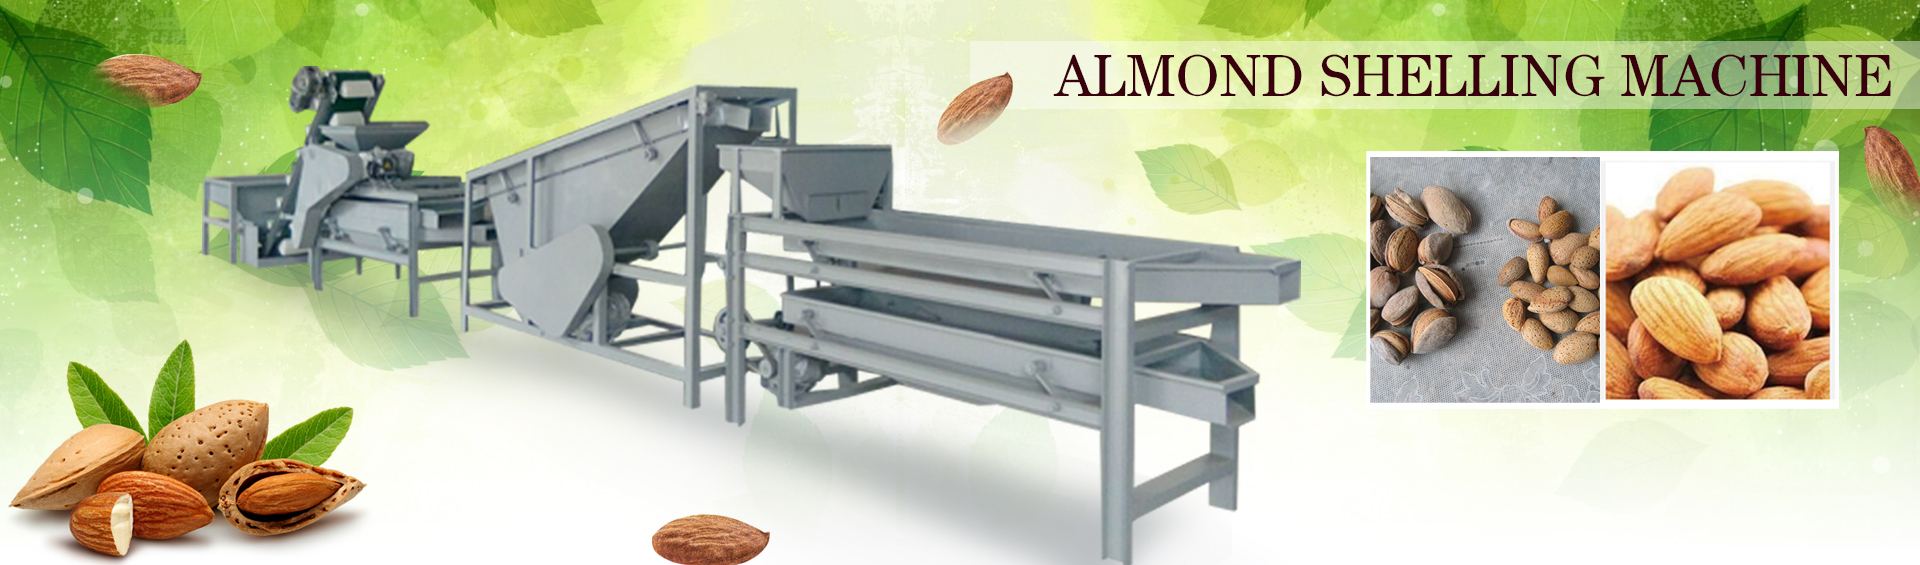 Almond Shelling Process Machine